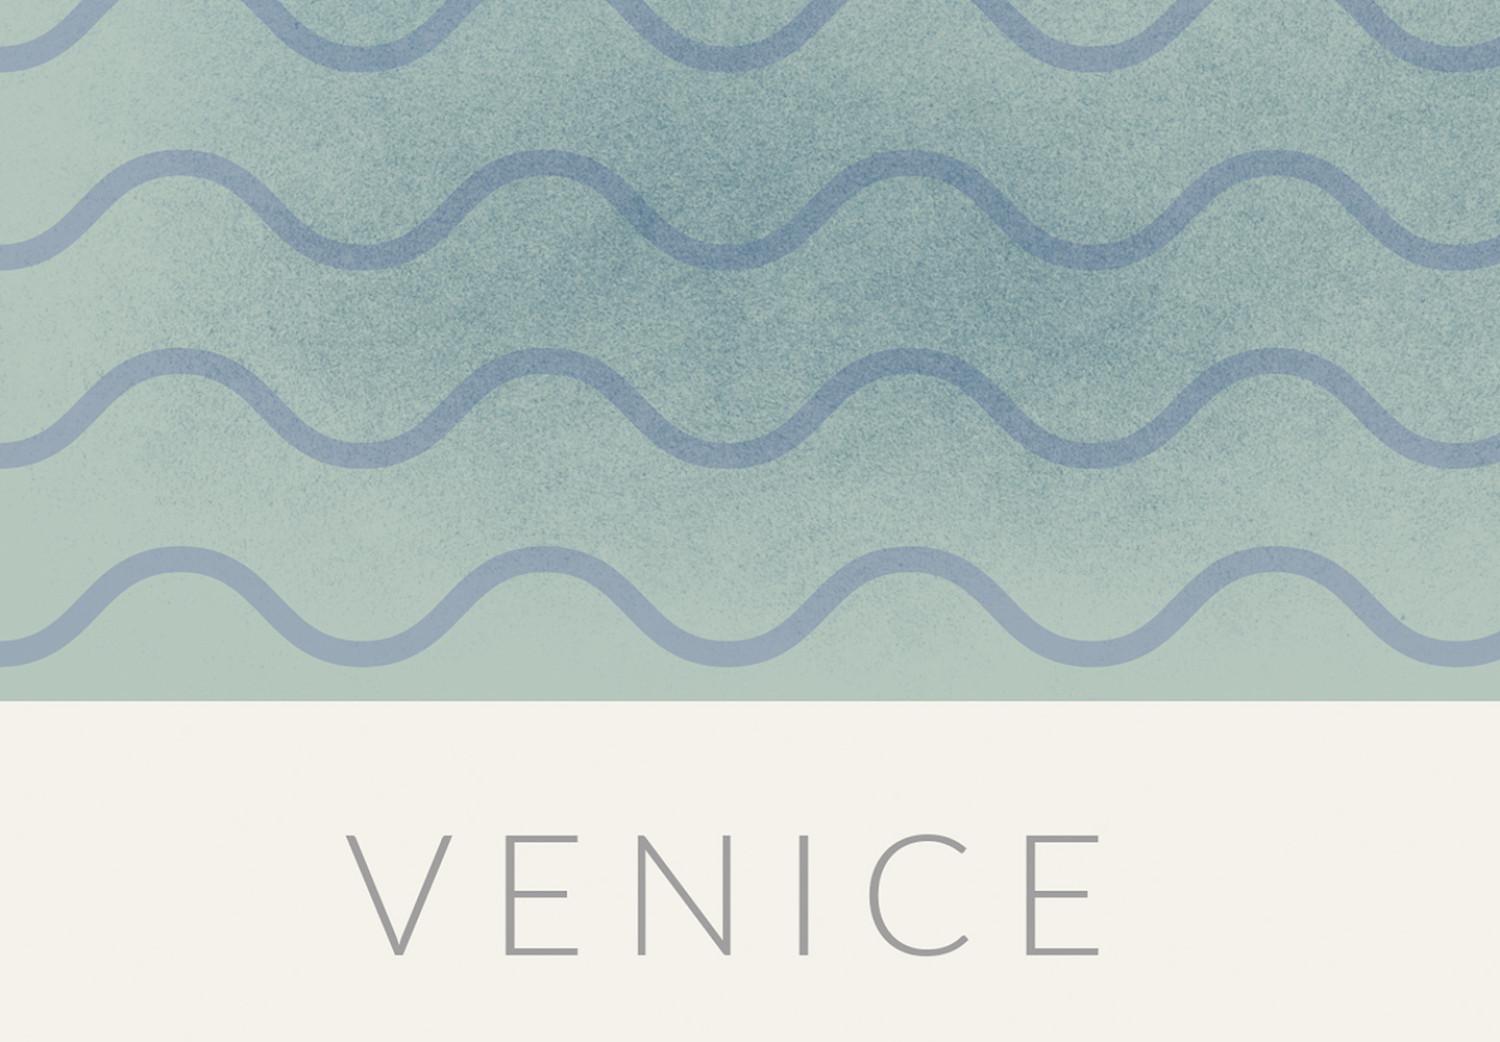 Cuadro Venecia sobre las olas - dibujo del centro de la ciudad, rosa y azul